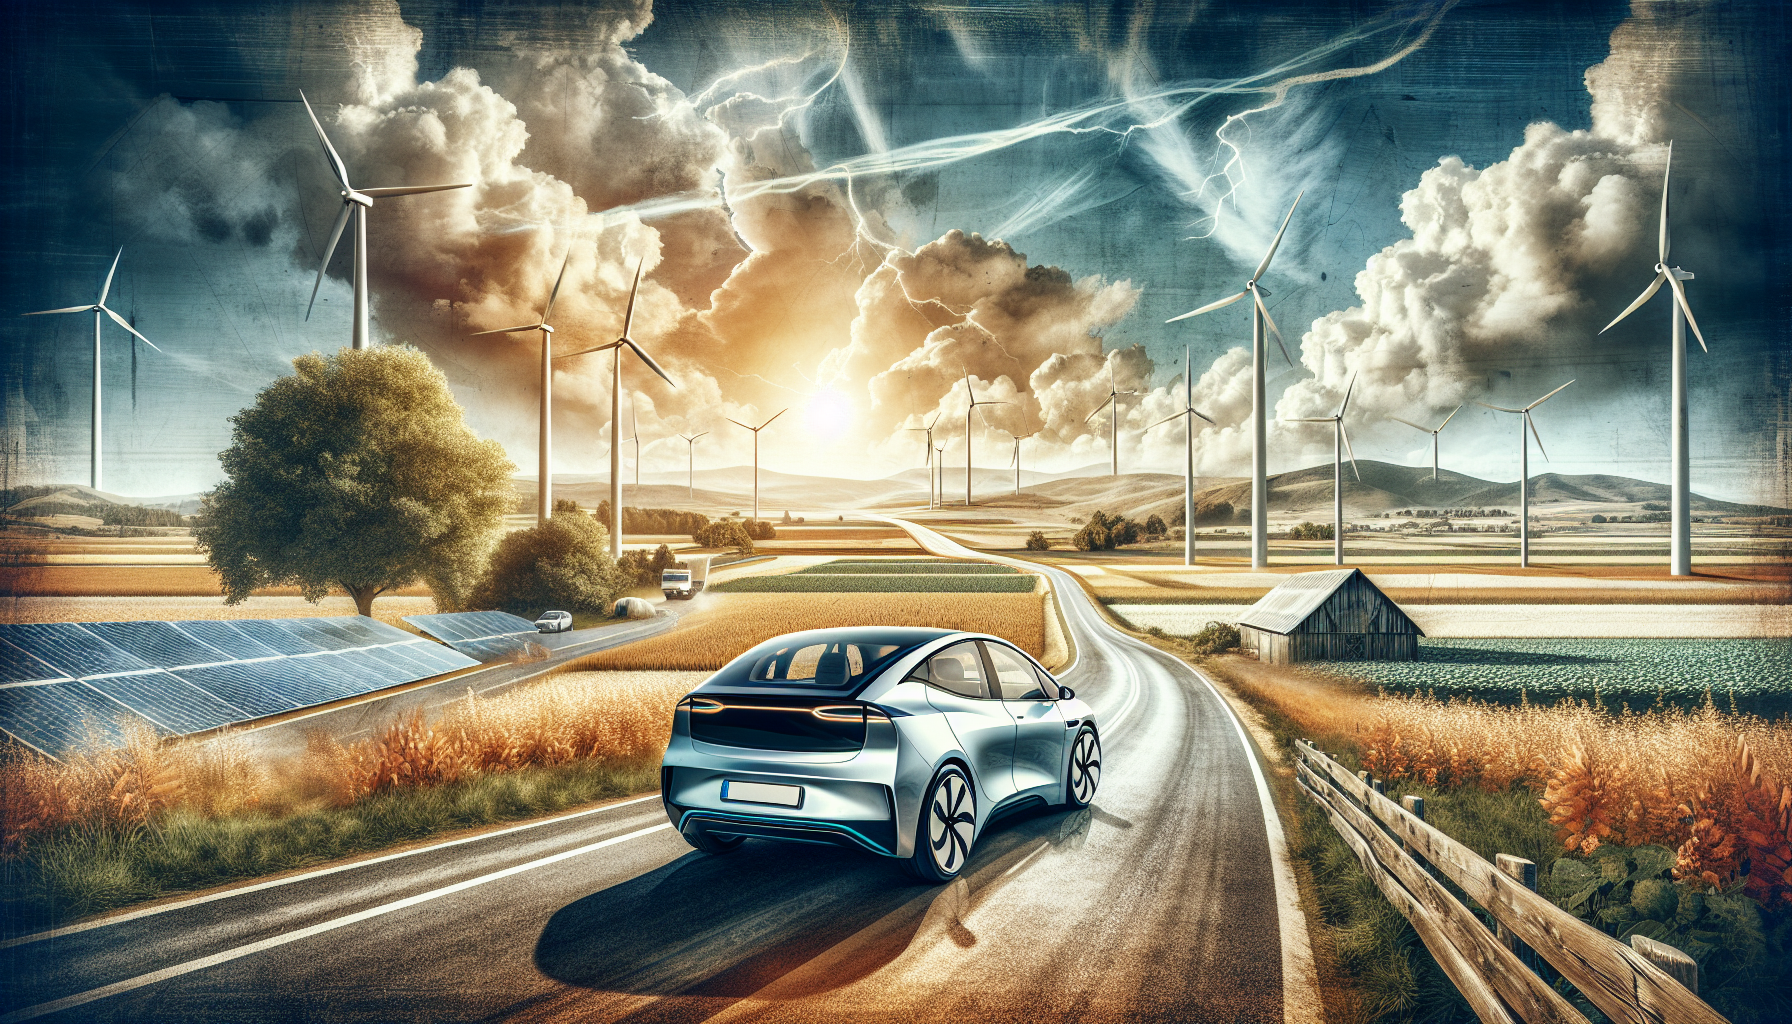 découvrez les avantages de la conduite d'une voiture électrique id3 et son impact positif sur l'environnement. apprenez pourquoi cette voiture est un choix judicieux pour l'avenir de la mobilité durable.